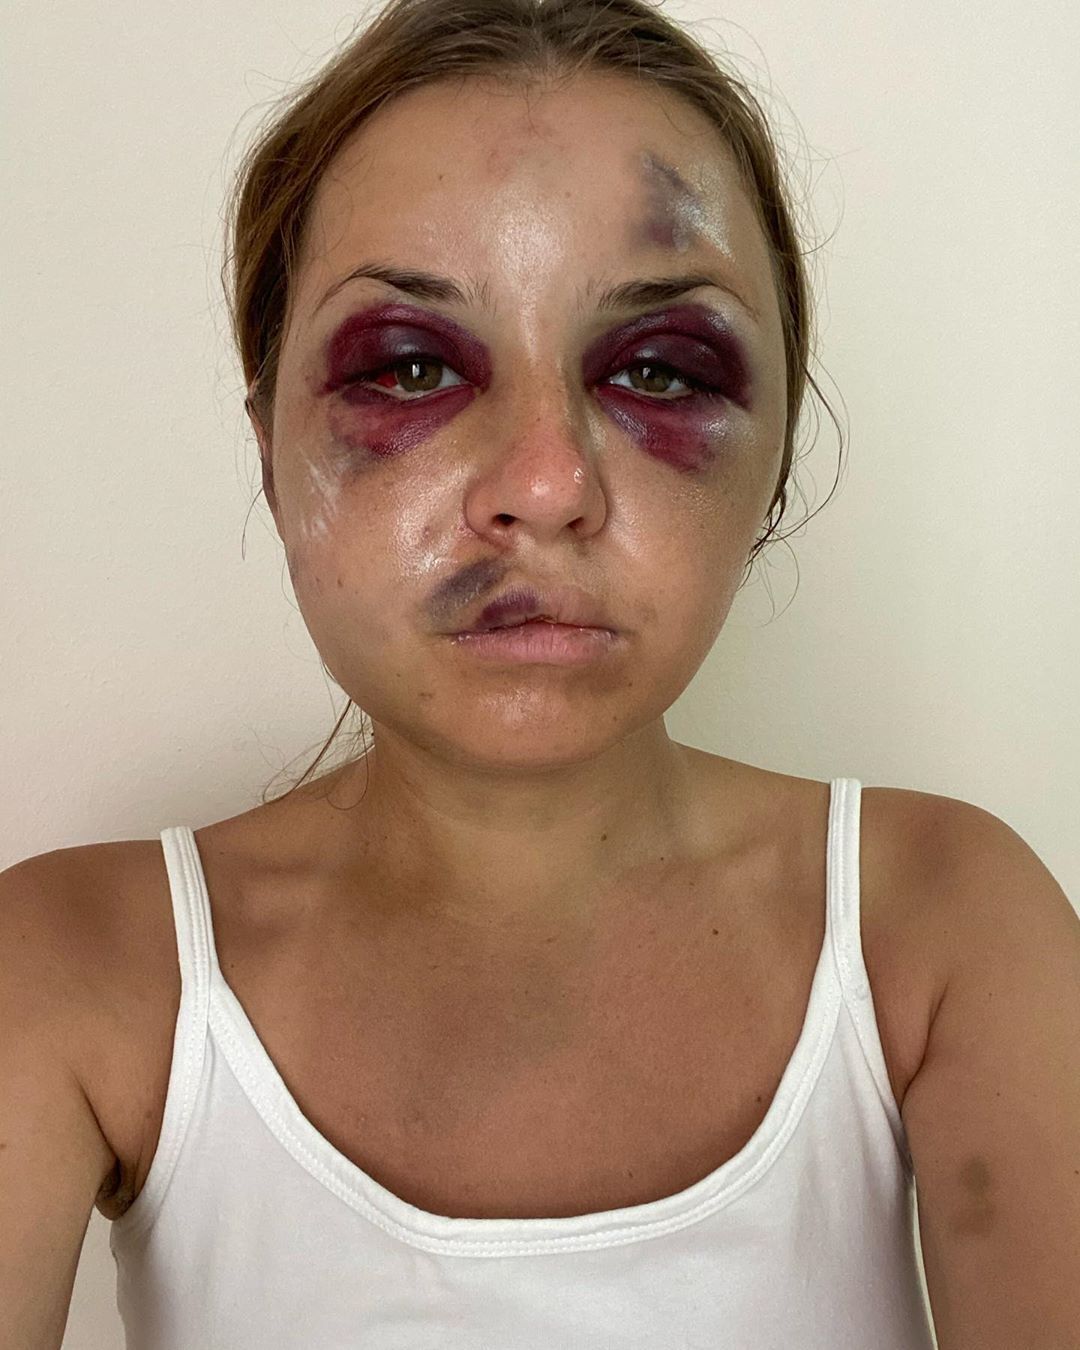 Анастасия Луговая на 2-й день после избиения